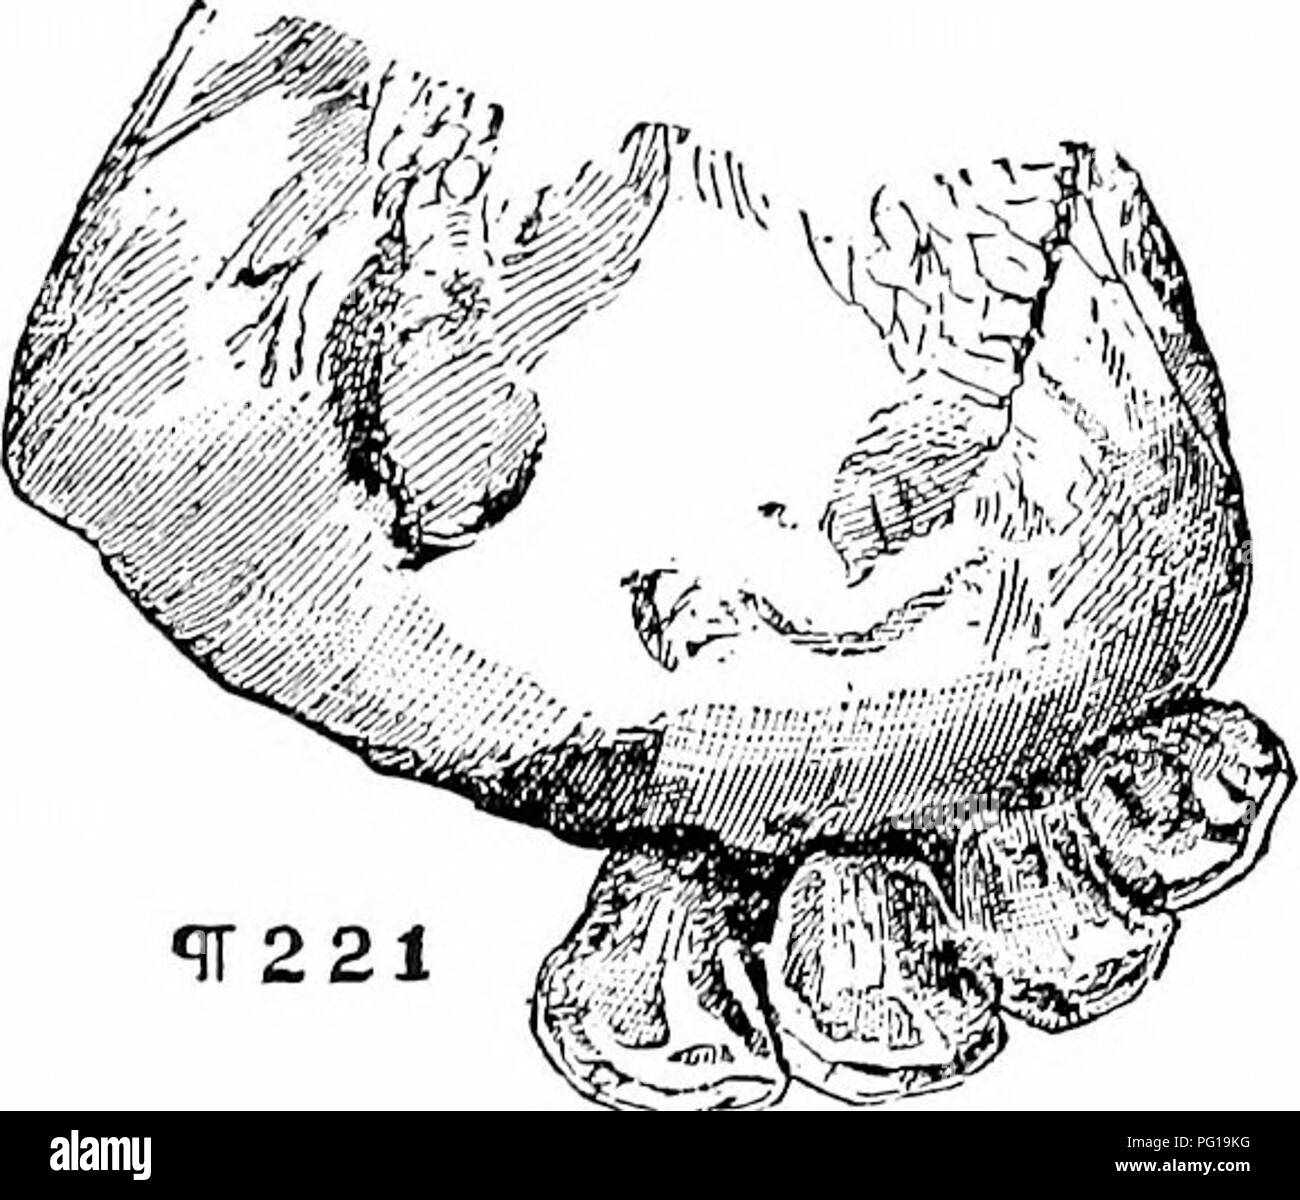 . Histoire de bovins Hereford : prouvé de façon concluante la plus ancienne d'espèces améliorées . Bovins Hereford. 310 HISTOIRE DE L'H E E E F 0 R D'vacuities sents, bovins entre eux sera presque égale à la largeur des dents. Les visages des dents aussi, ces visages qui restent, seront allongés ; le triangle va diminuer, principalement dans la partie centrale des dents, tandis que d'une ligne, plus ou moins profondément dans l'ombre, commence à apparaître autour de la marque originale. "Tout cela, alors que la deuxième série de dents, les permanents, ont progressé dans leur support et ne s'approche vers la gencive, mais pas, comme je l Banque D'Images